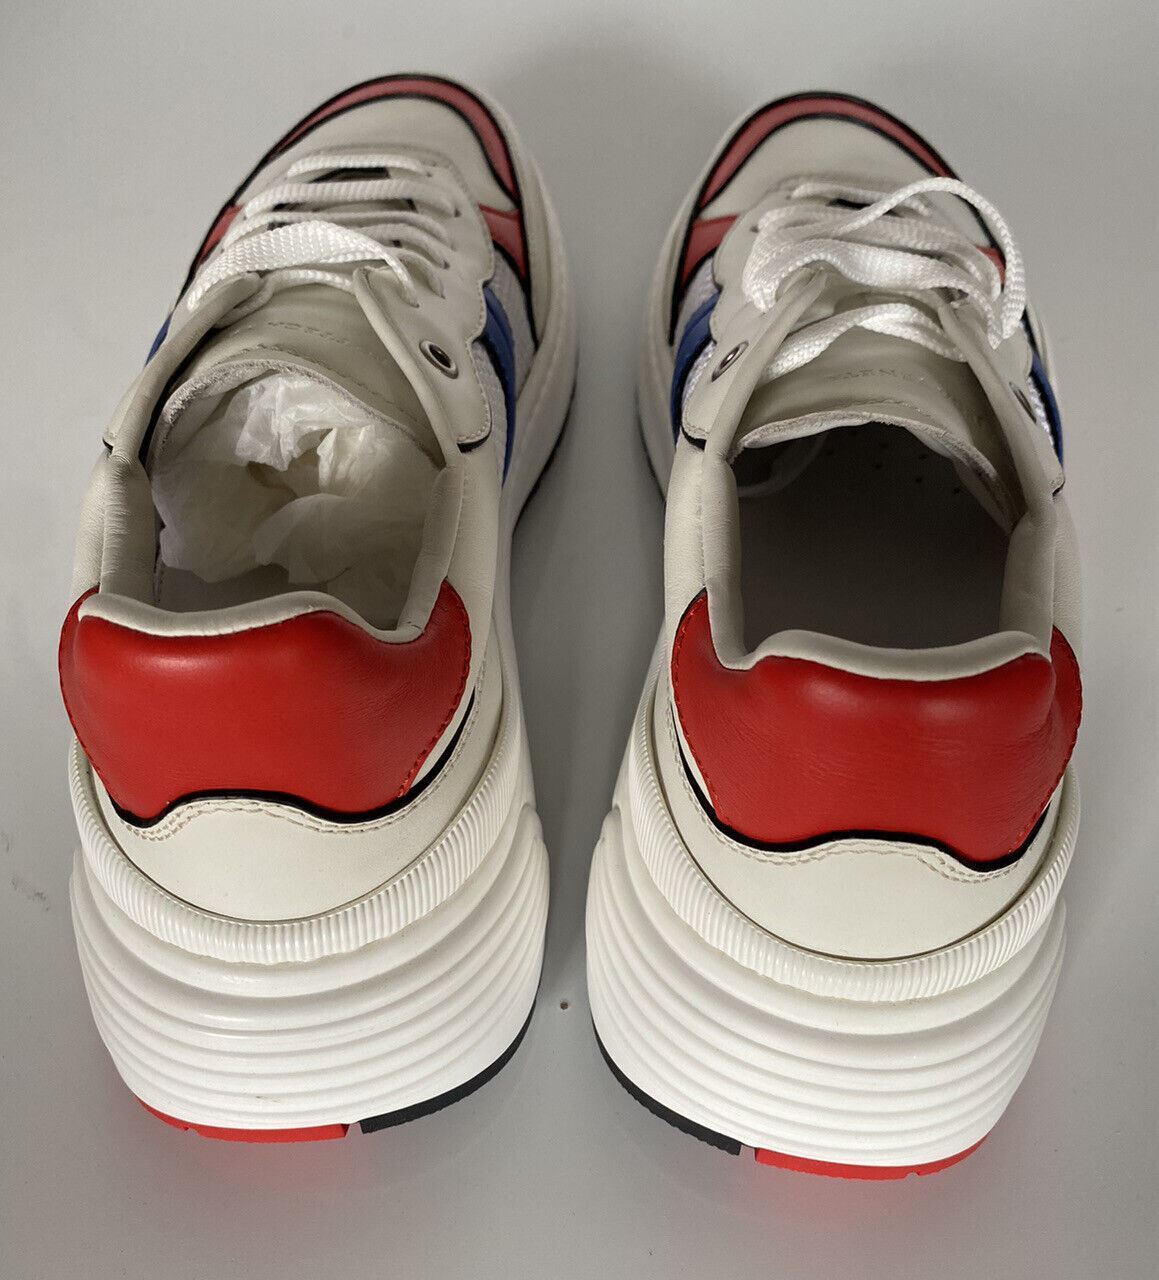 NIB Bottega Veneta Herren-Sneaker aus Leder und Mesh, Weiß/Rot/Blau, 7 US 565646 9080 